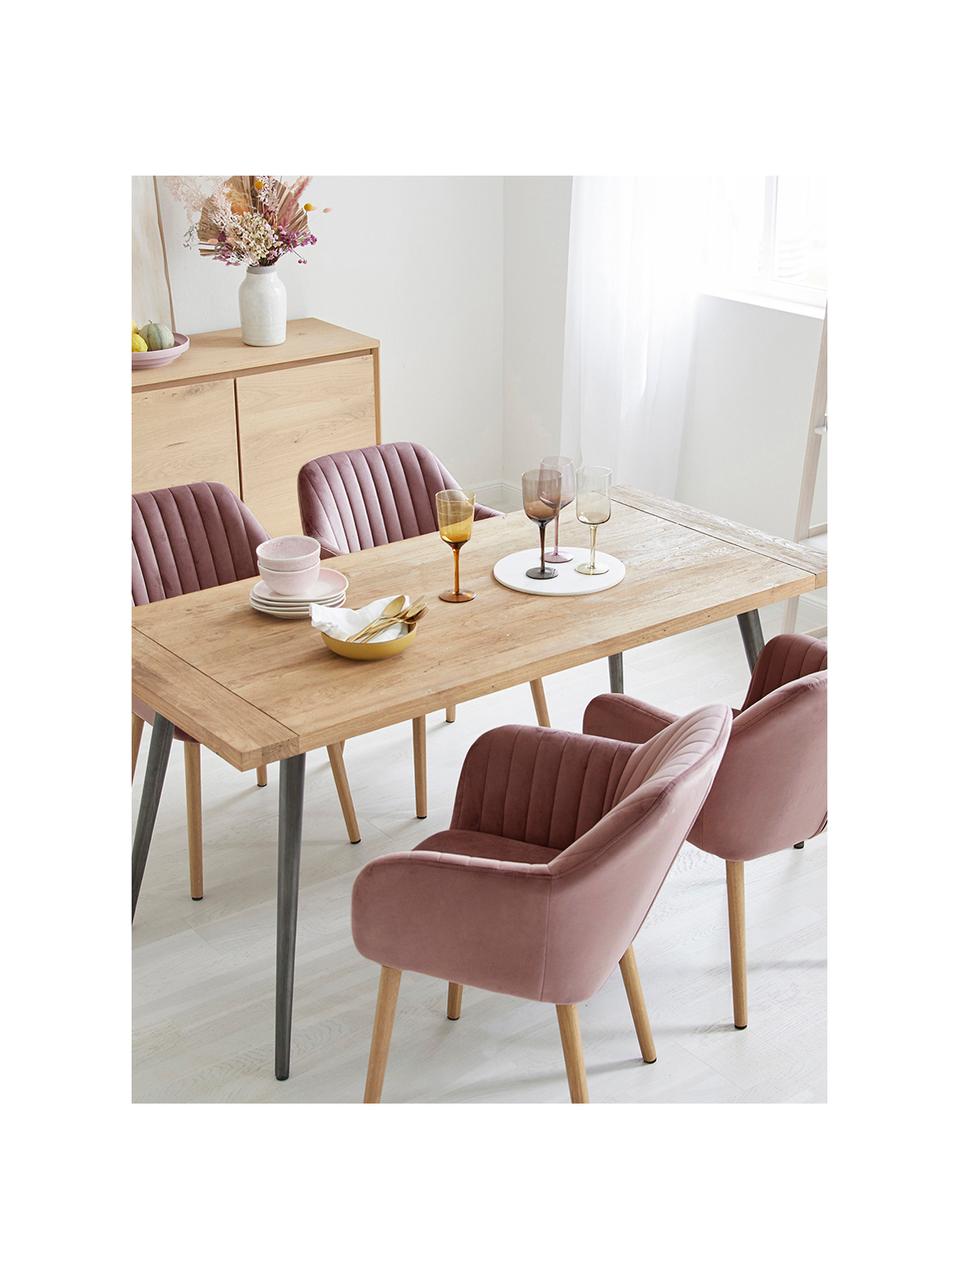 Sametová židle s područkami a dřevěnými nohami Emilia, Růžová, dubové dřevo, Š 57 cm, H 59 cm